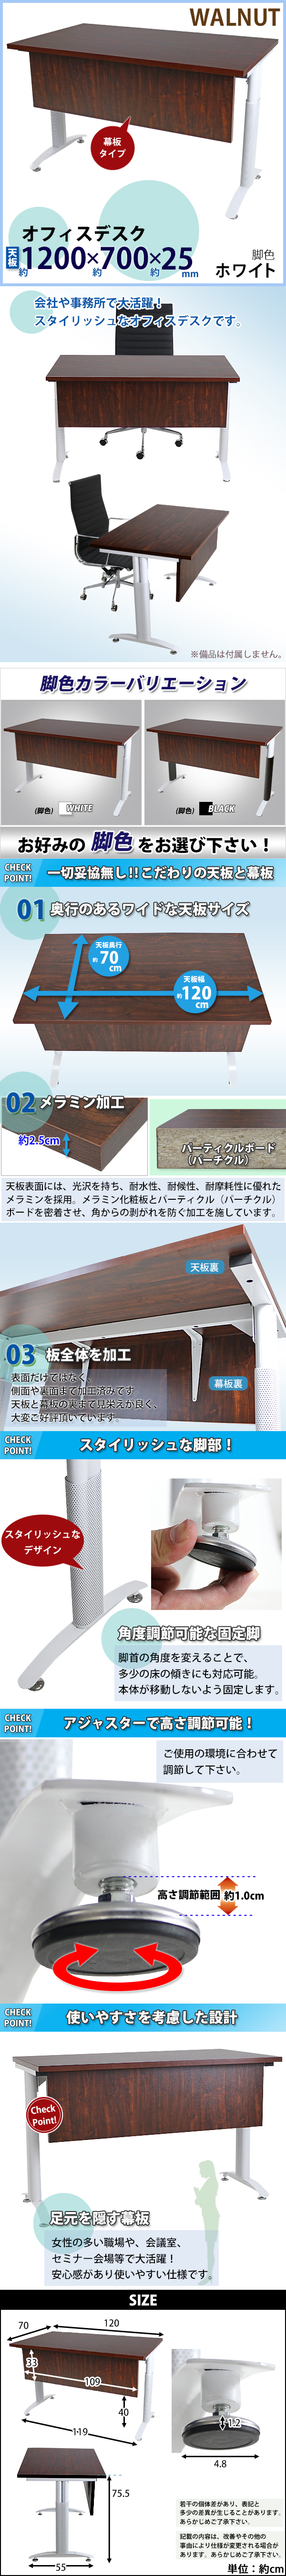 日本新品送料無料 オフィスデスク デスク 幕板付 約W1200×約D700×約H755 ウォールナット 平机 ワークデスク 事務机 会議テーブル 脚色 白 平机